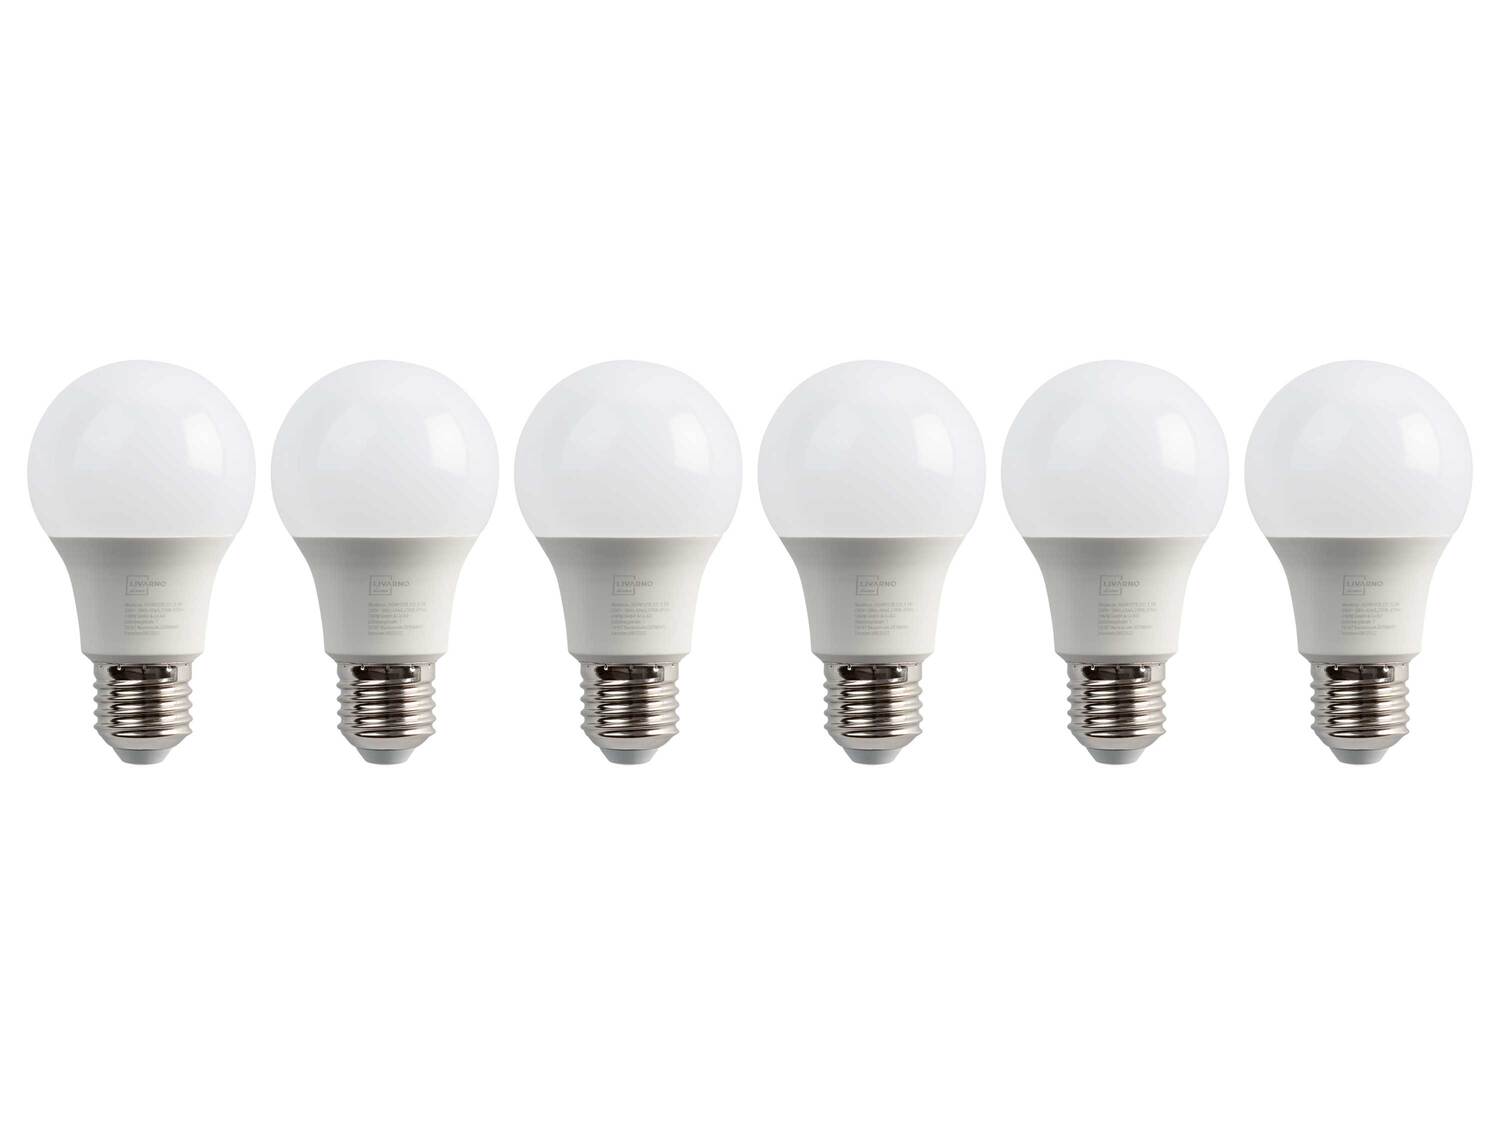 Ampoules LED , le prix 7.99 &#8364; 
- Au choix :
- GU10, 5,5 W, 350 lm
- E27, ...